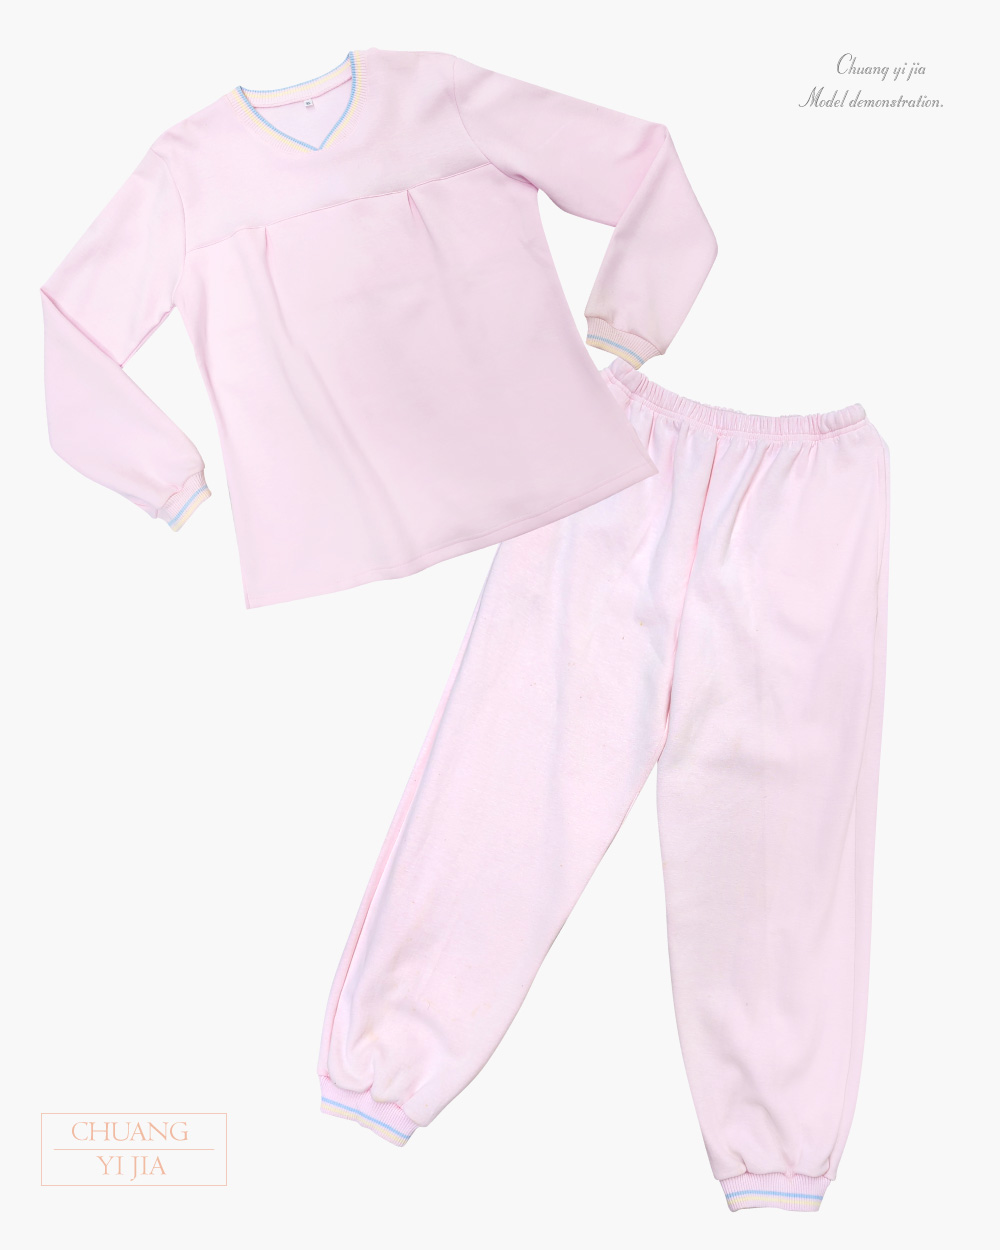 創e家團體服-健檢服長褲-粉紅色 平拍正面套裝